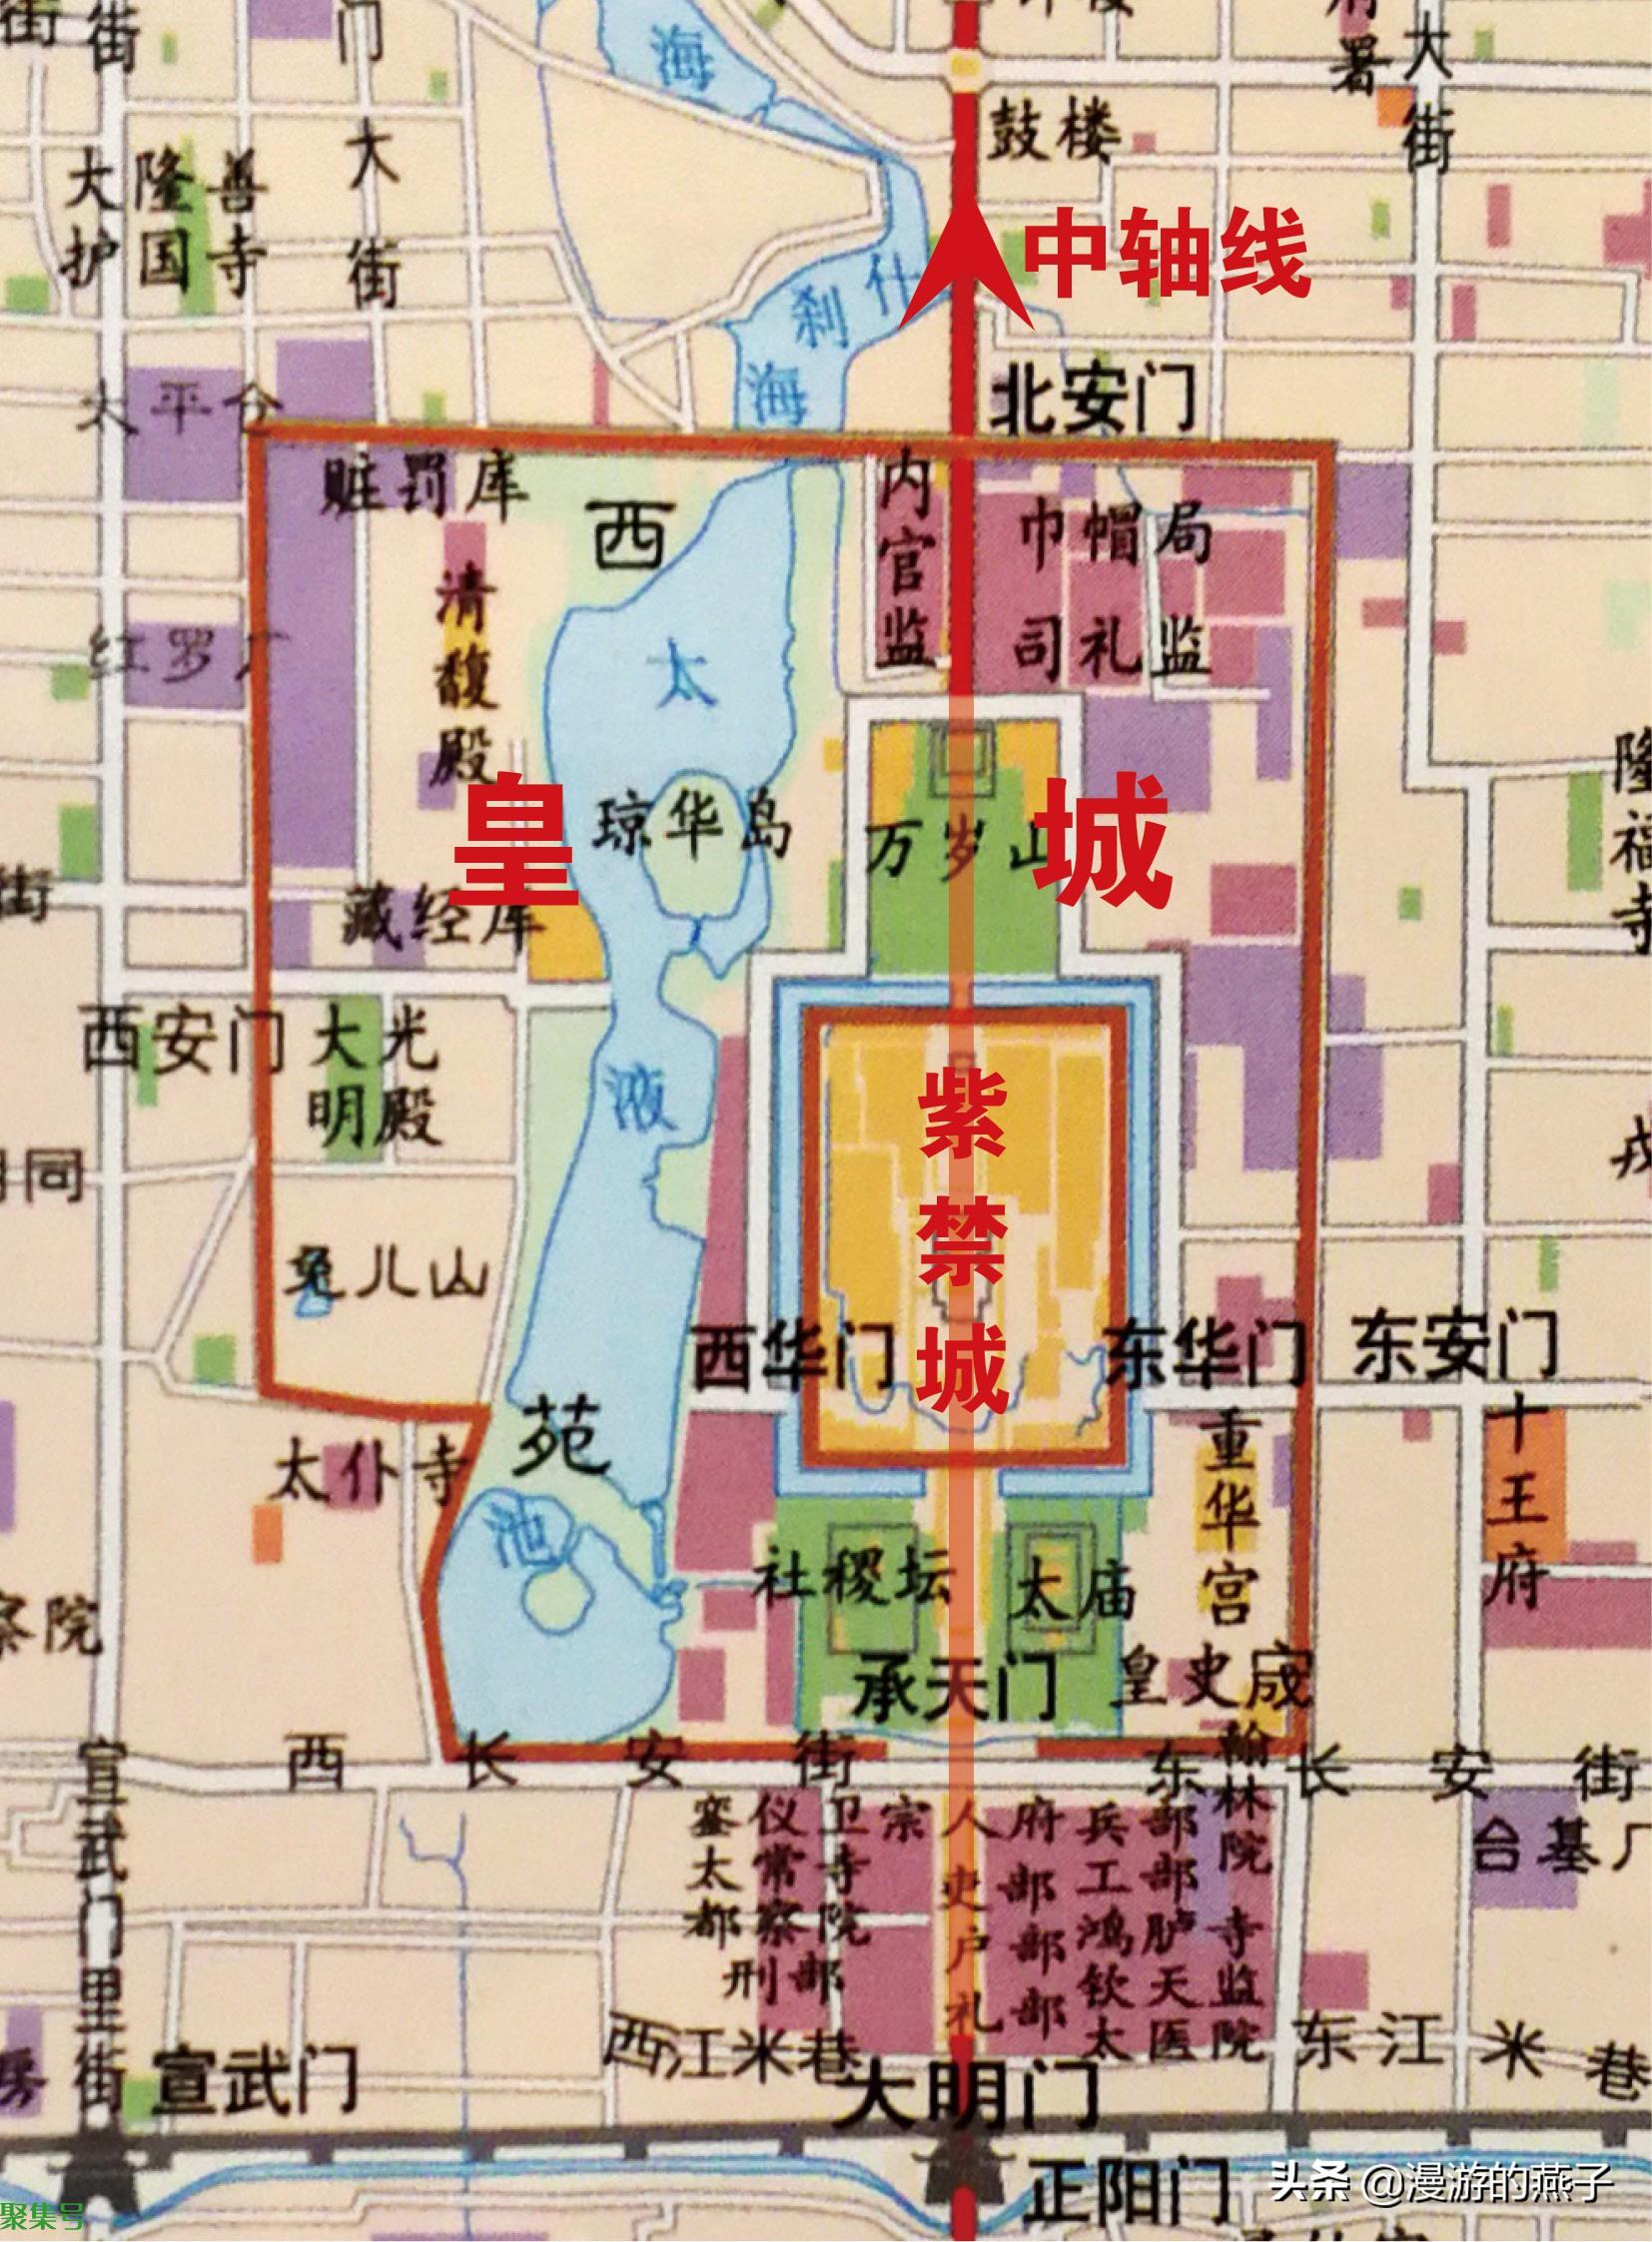 北京故宫旅游地图+平面图_北京旅游地图库